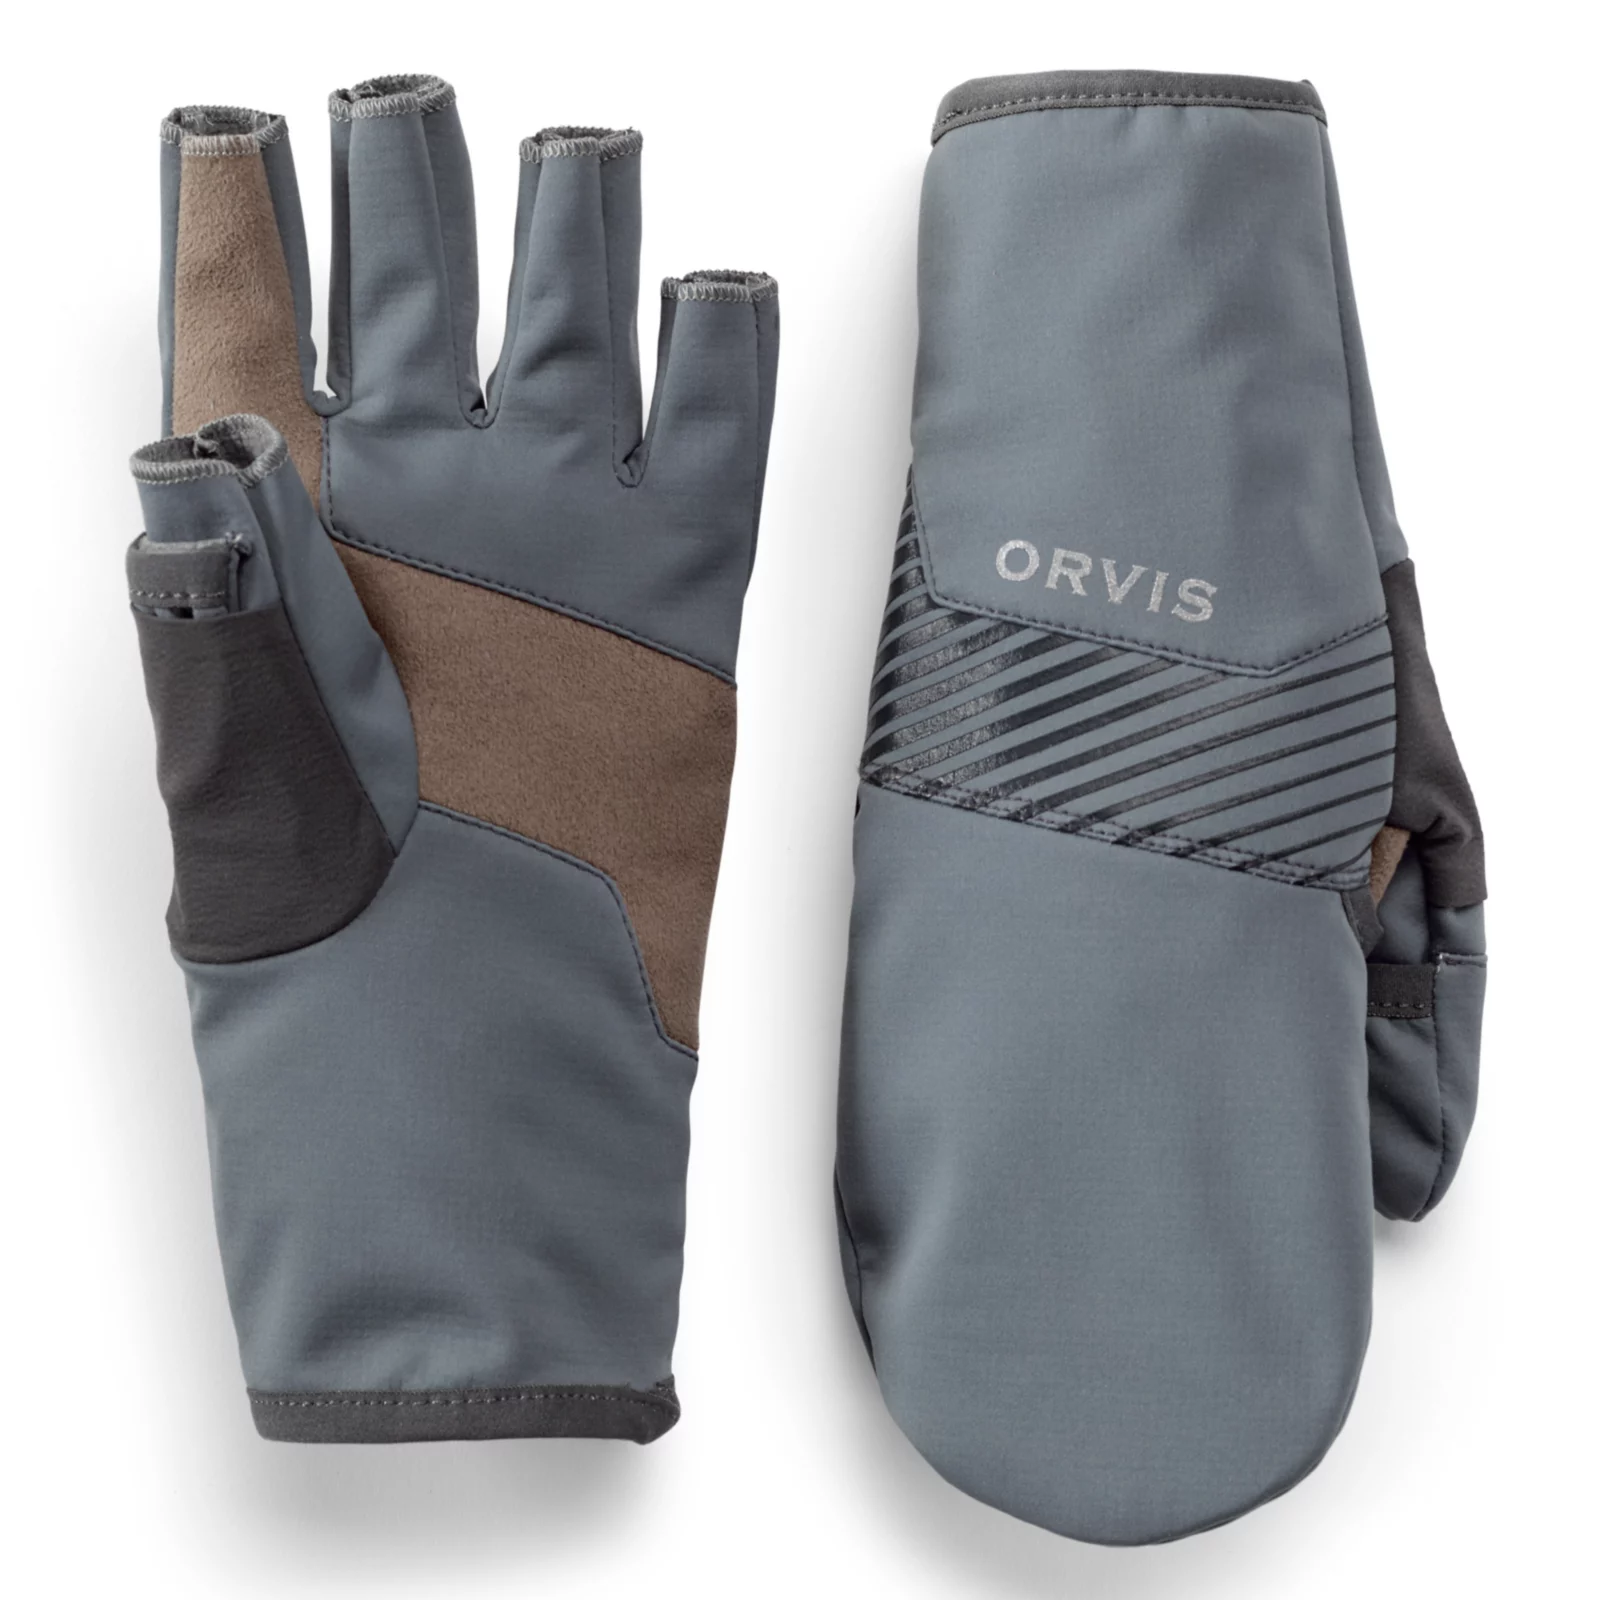 orvis fly fishing gloves